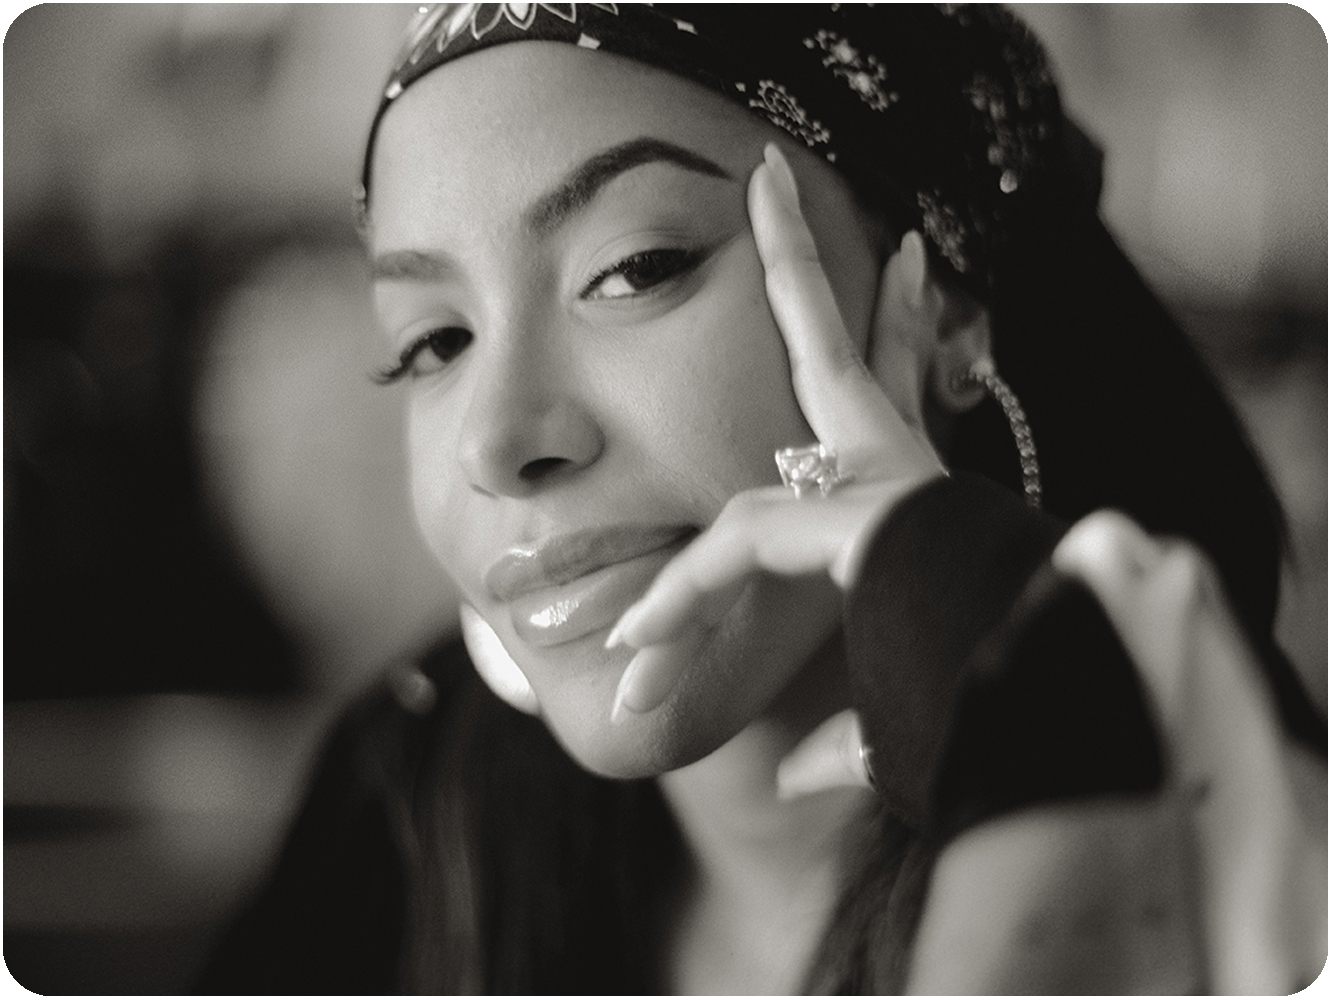  La música de Aaliyah seguirá sin estar en plataformas, salvo en Youtube